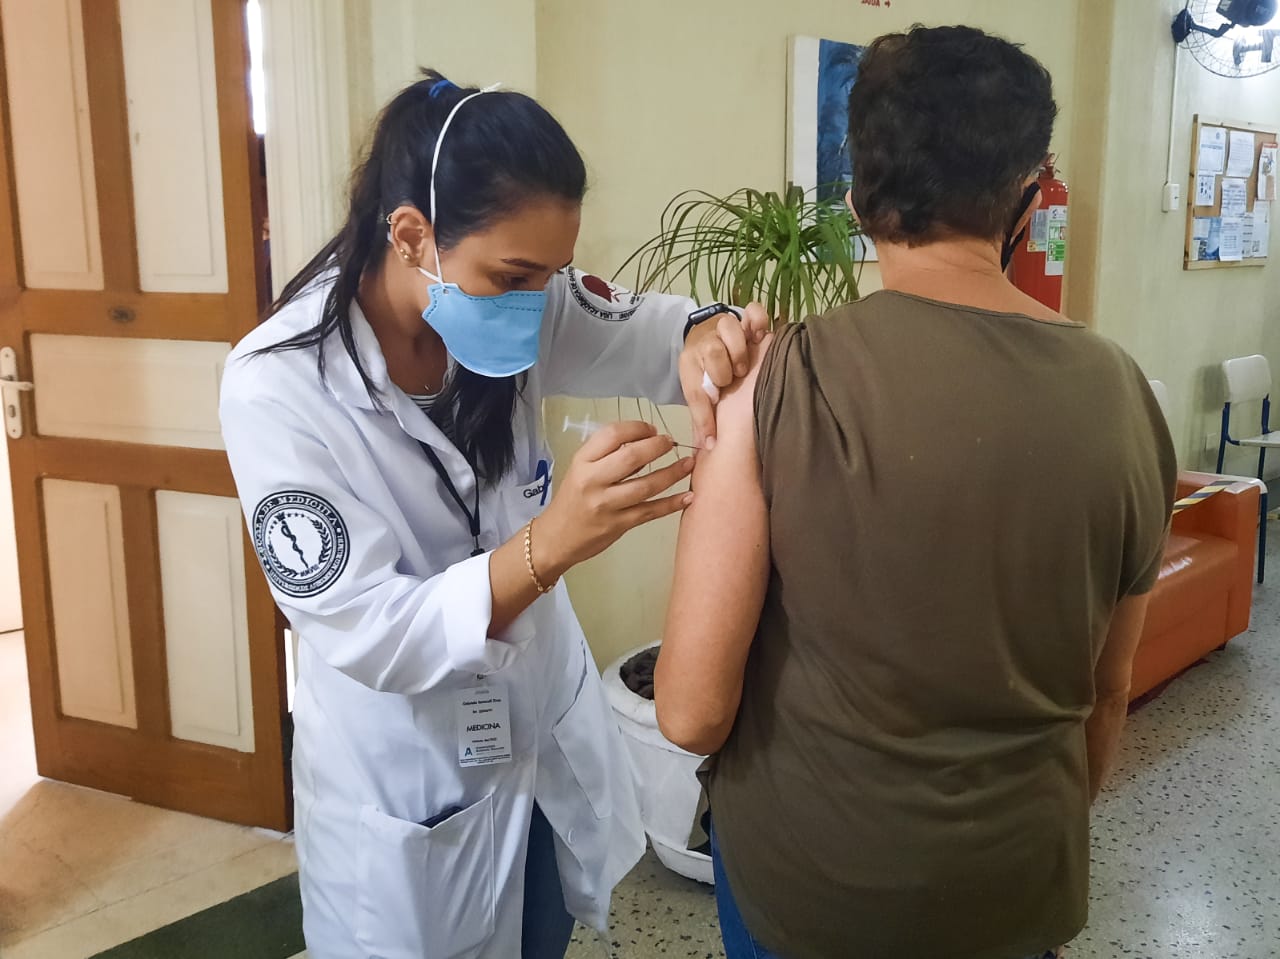 Enfermeira aplica vacina em uma senhora de cabelos curtos que está posicionada de costas para a câmera, recebendo a vacina no braço esquerdo.